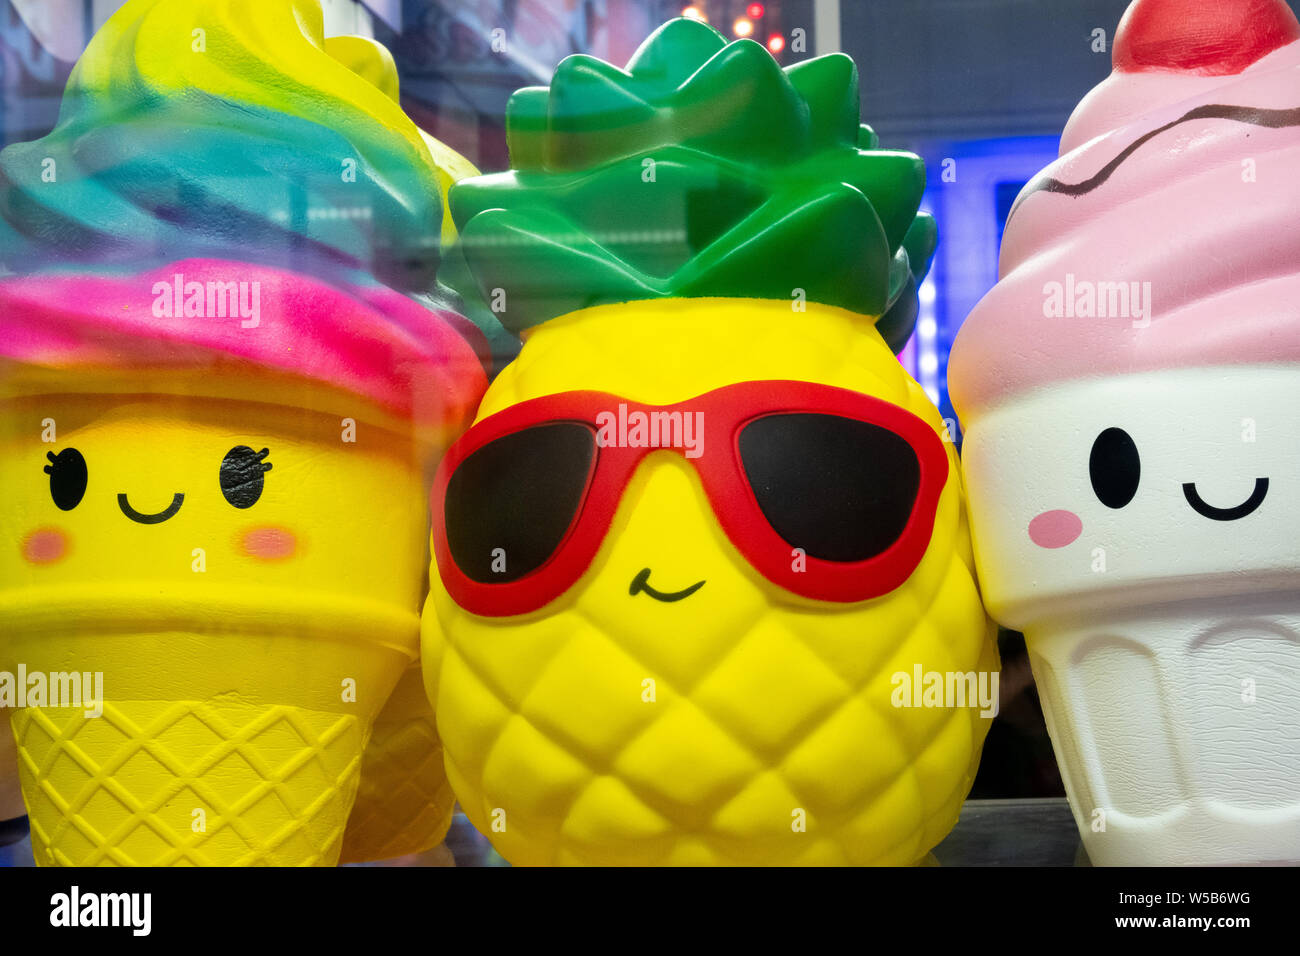 Coloridas frutas de juguete y dulces de plástico que son premios en un carnaval Foto de stock